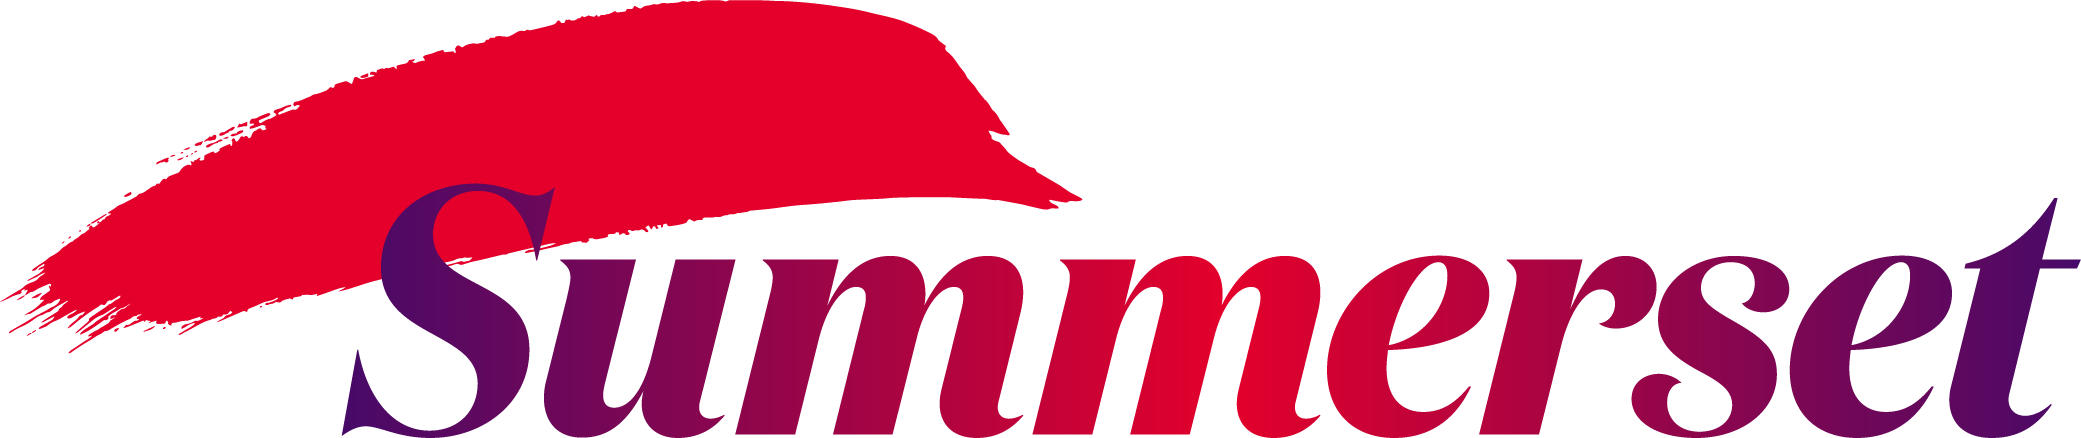 Summerset at Avonhead logo